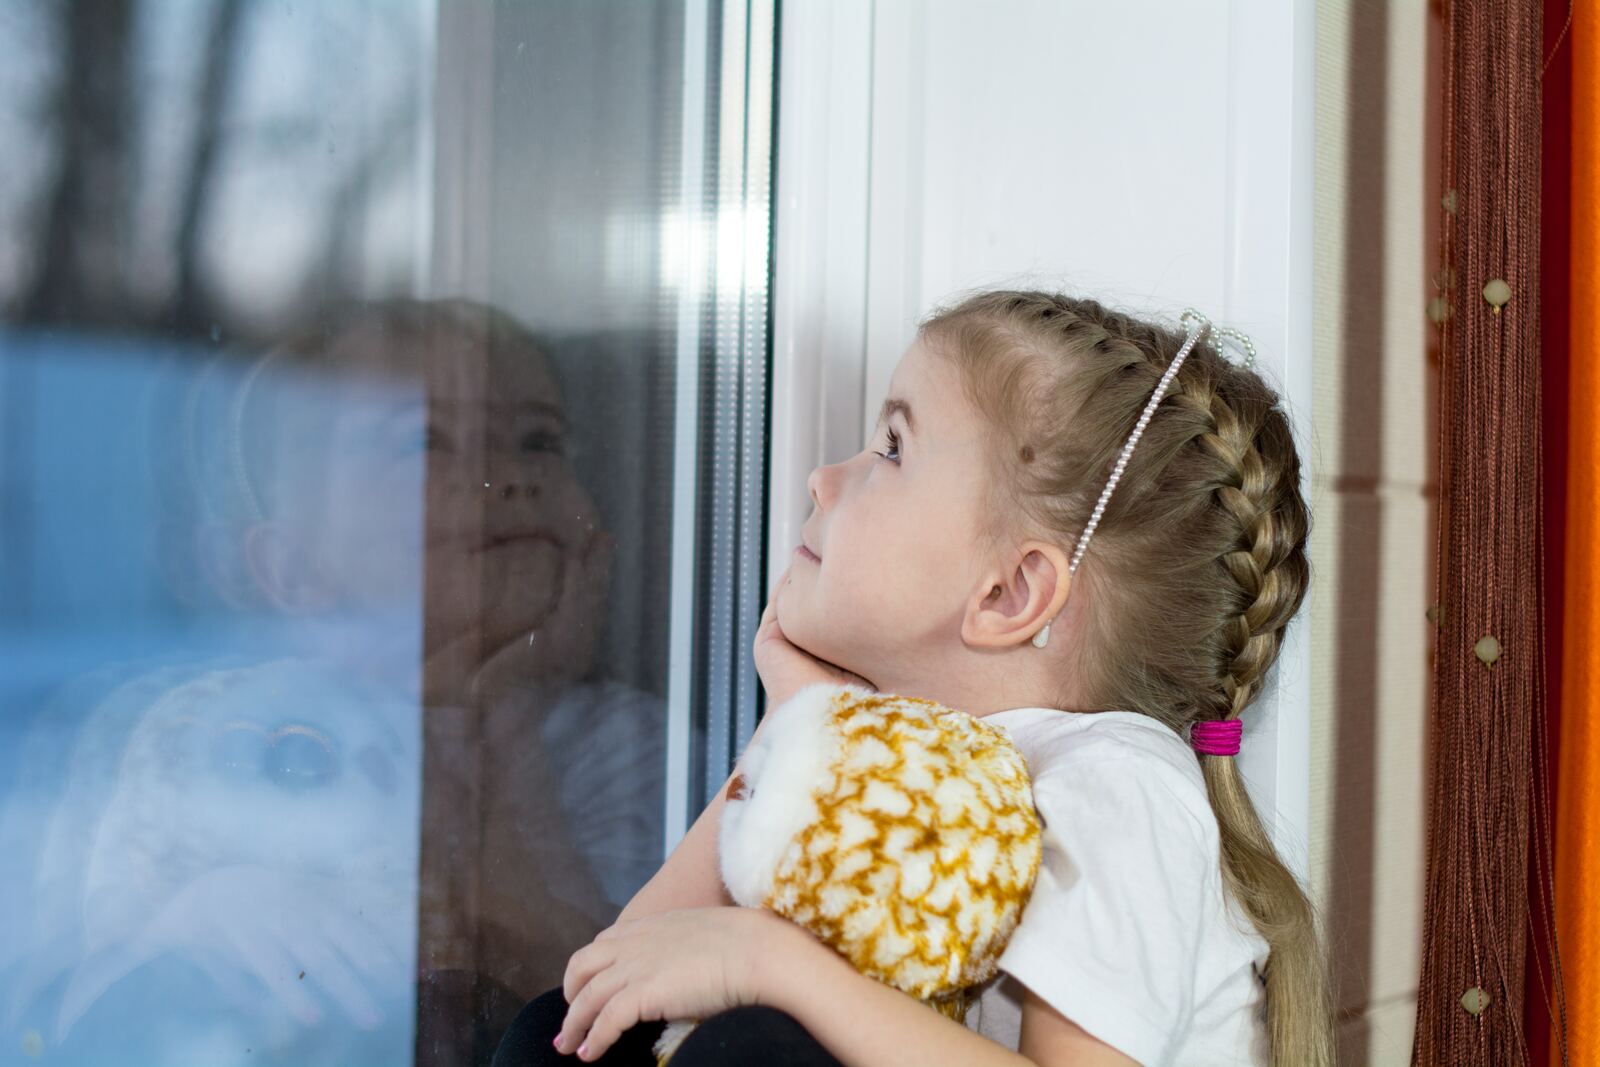 Окно – источник опасности для детей